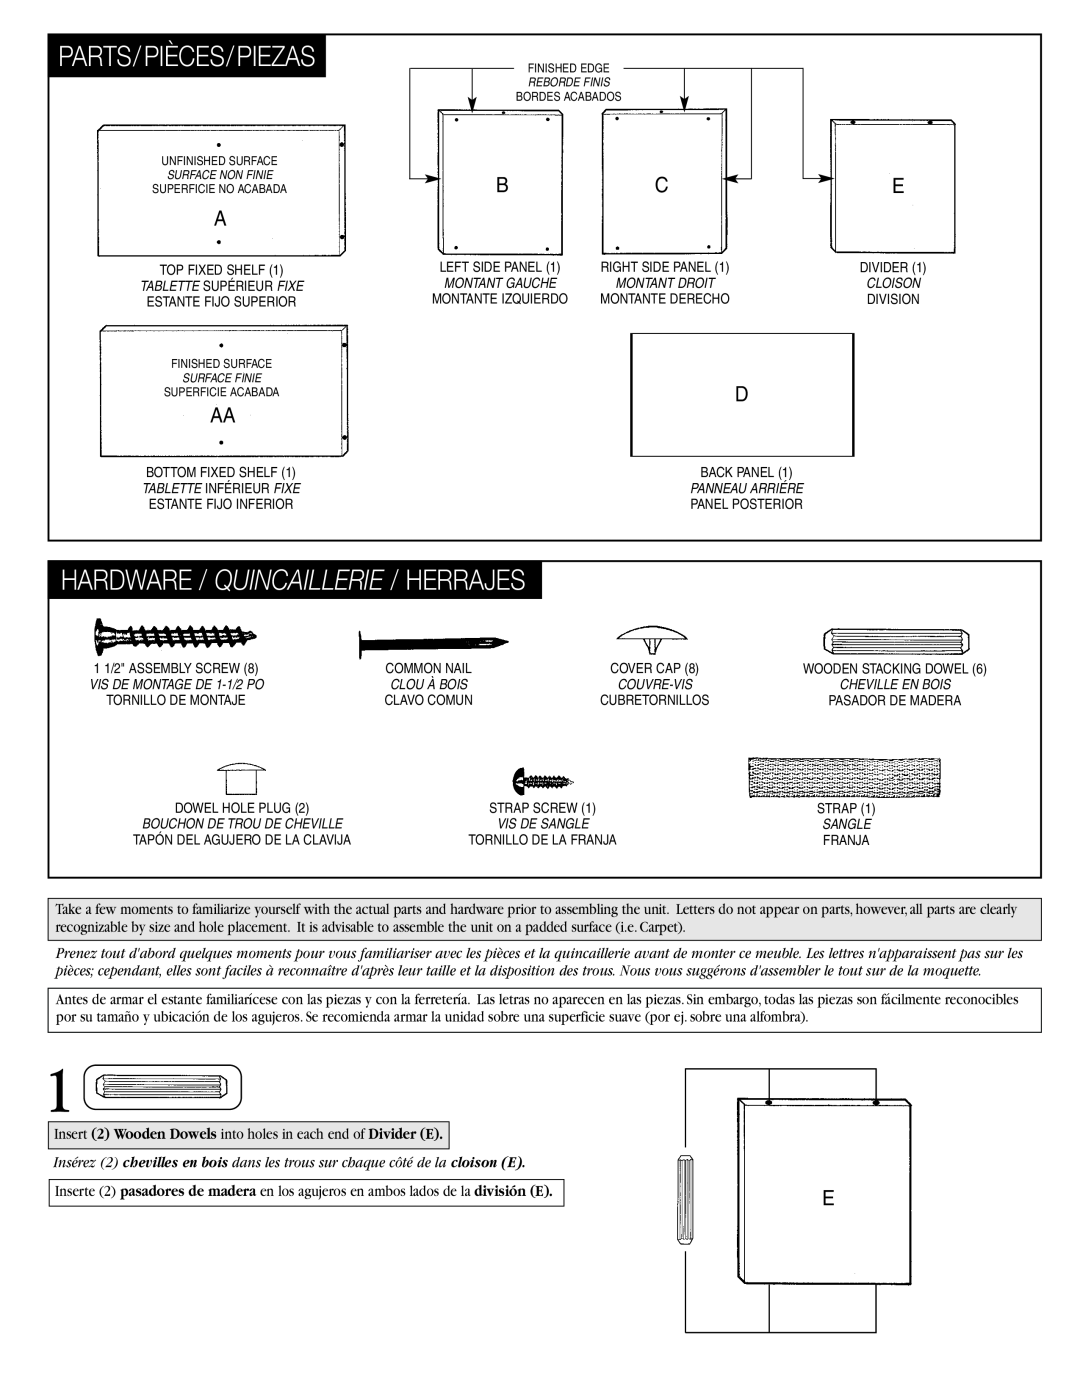 Closet Maid 10140 instruction sheet Parts/Pièces/Piezas, Hardware / Quincaillerie / Herrajes 